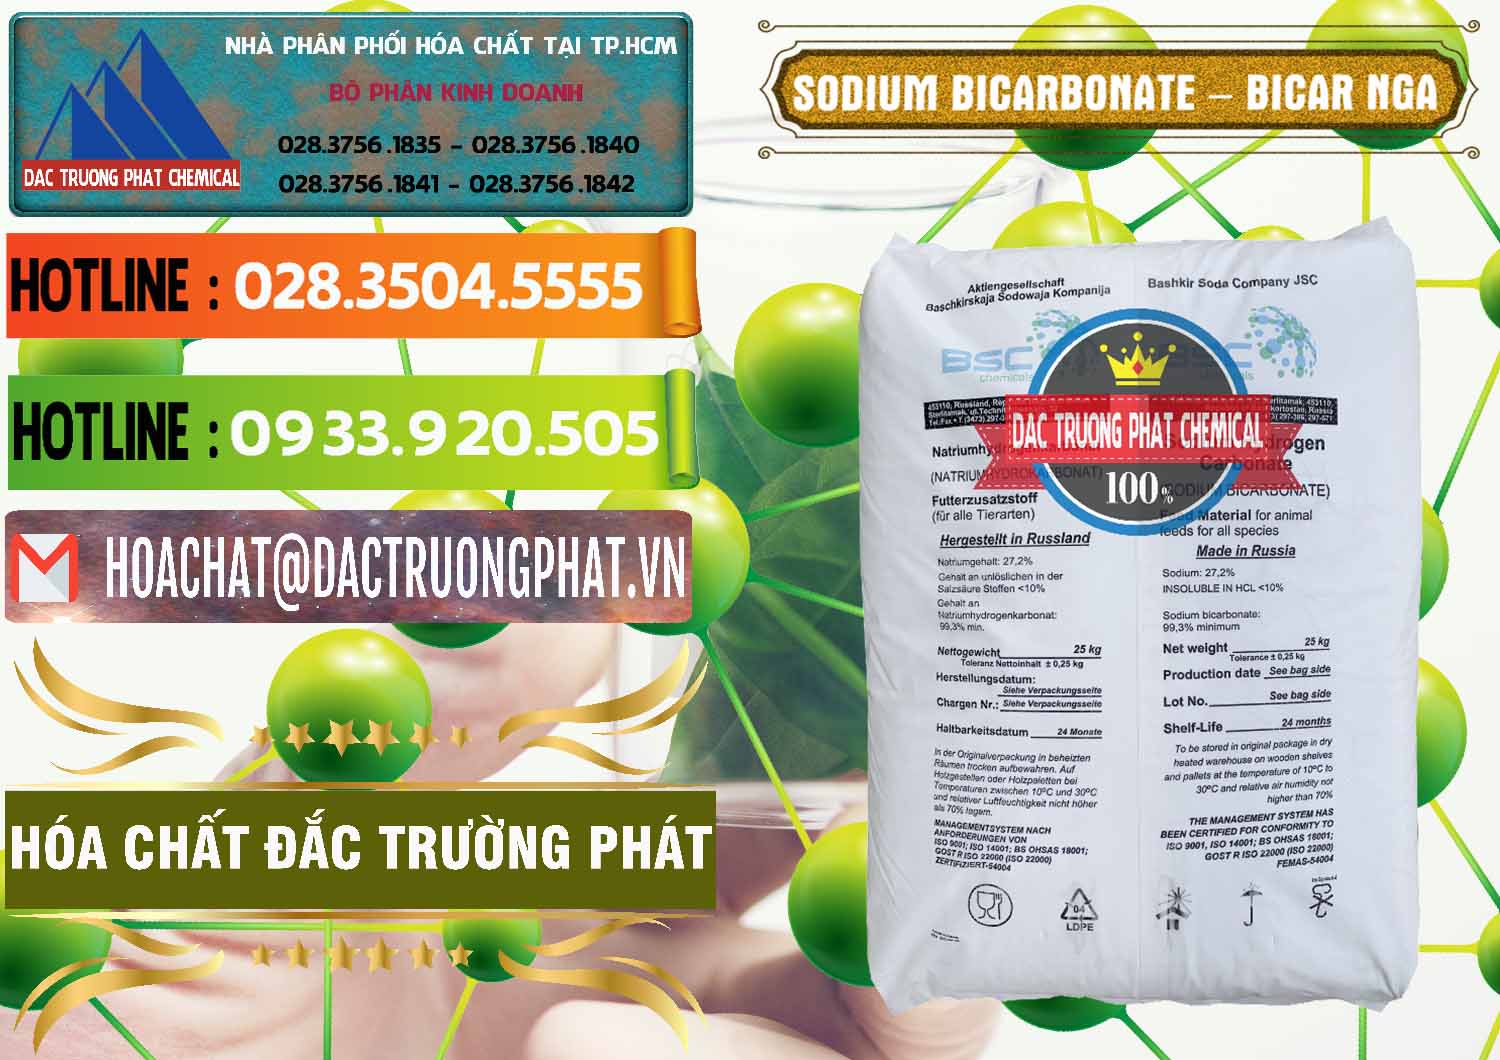 Cty chuyên cung cấp & bán Sodium Bicarbonate – Bicar NaHCO3 Nga Russia - 0425 - Nơi chuyên cung cấp - bán hóa chất tại TP.HCM - cungcaphoachat.com.vn